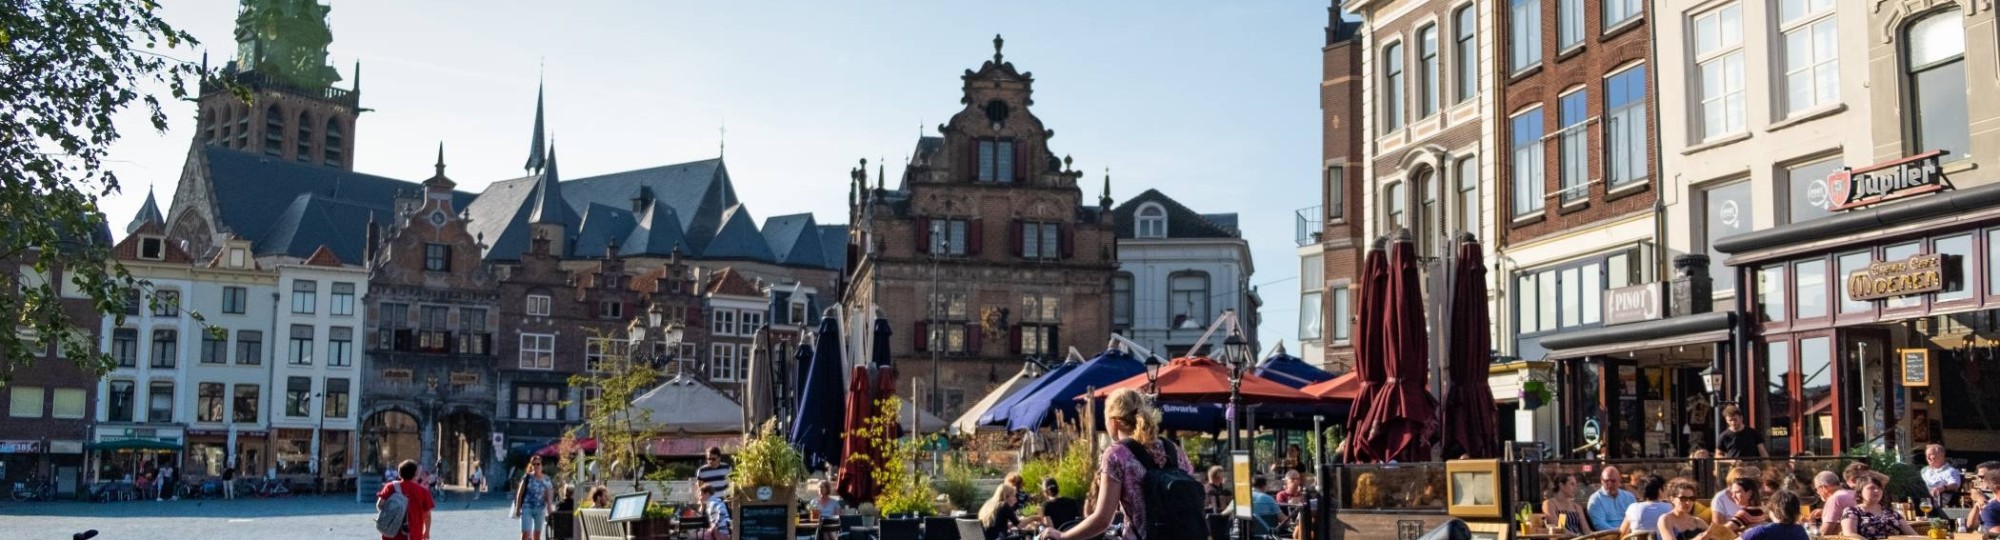 Nijmegen Grote Markt met fietsen